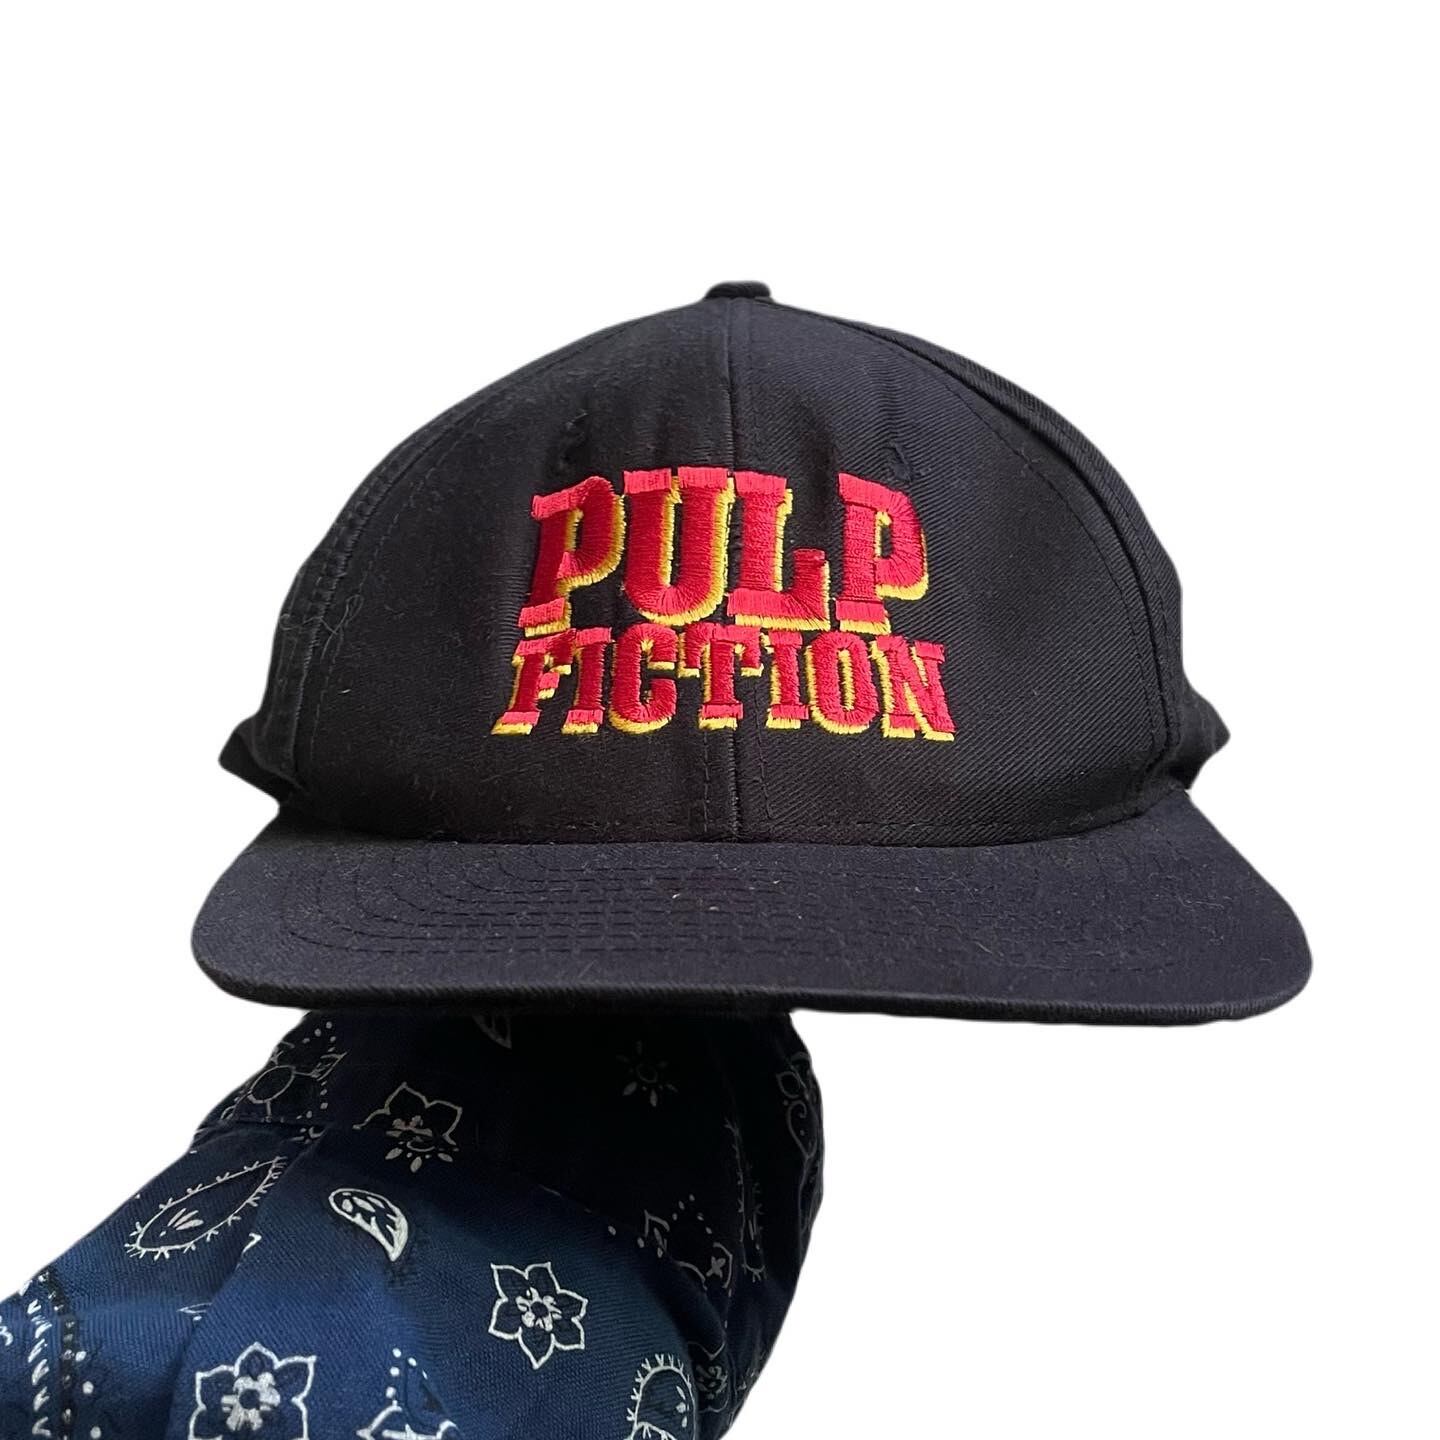 s PULP FICTION cap   What'z up